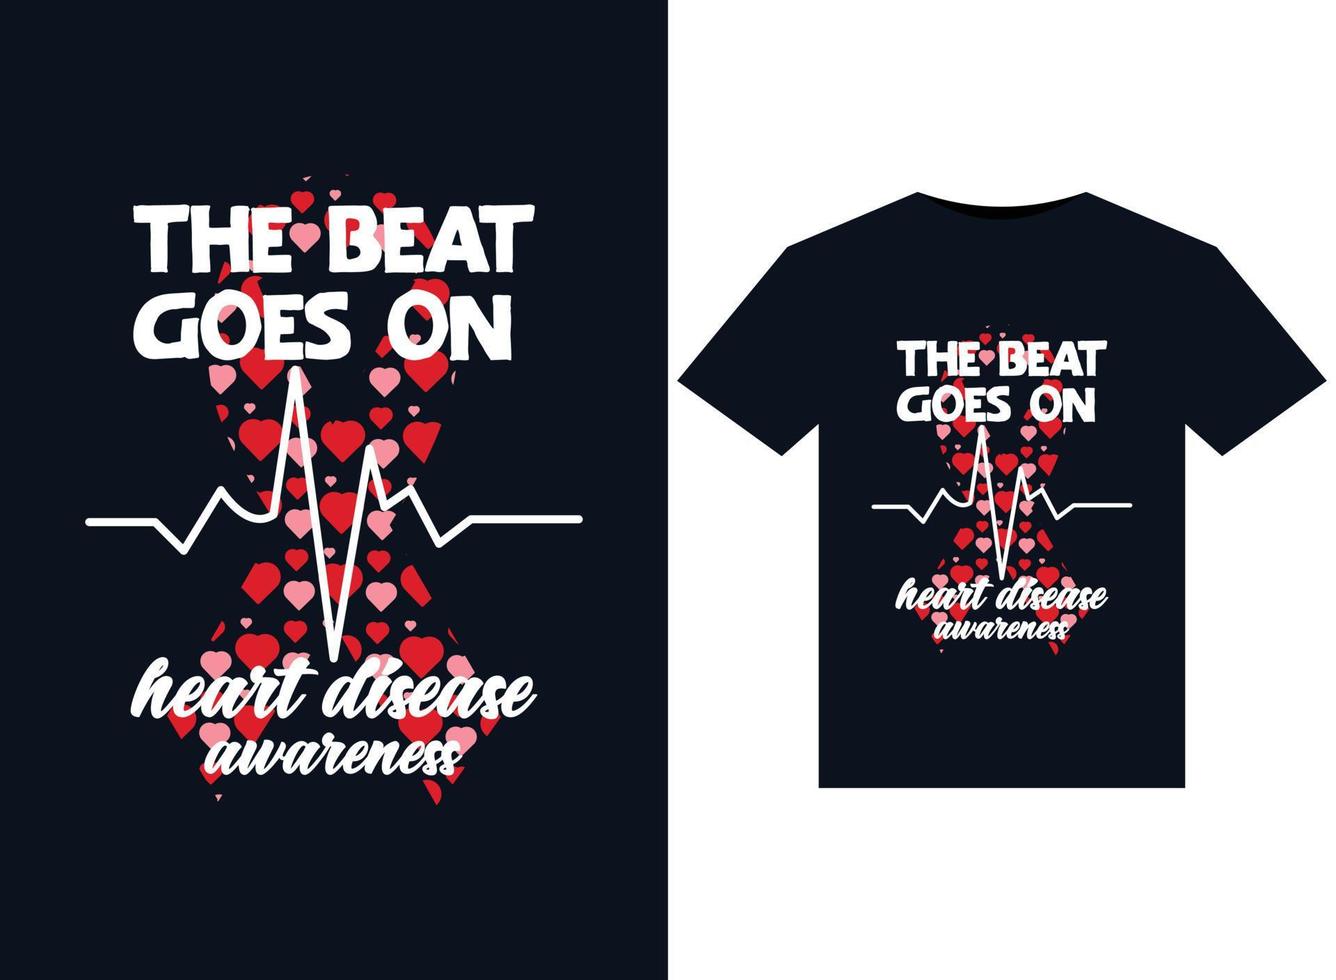 the beat goes on Illustrationen zur Sensibilisierung für Herzkrankheiten für druckfertige T-Shirt-Designs vektor